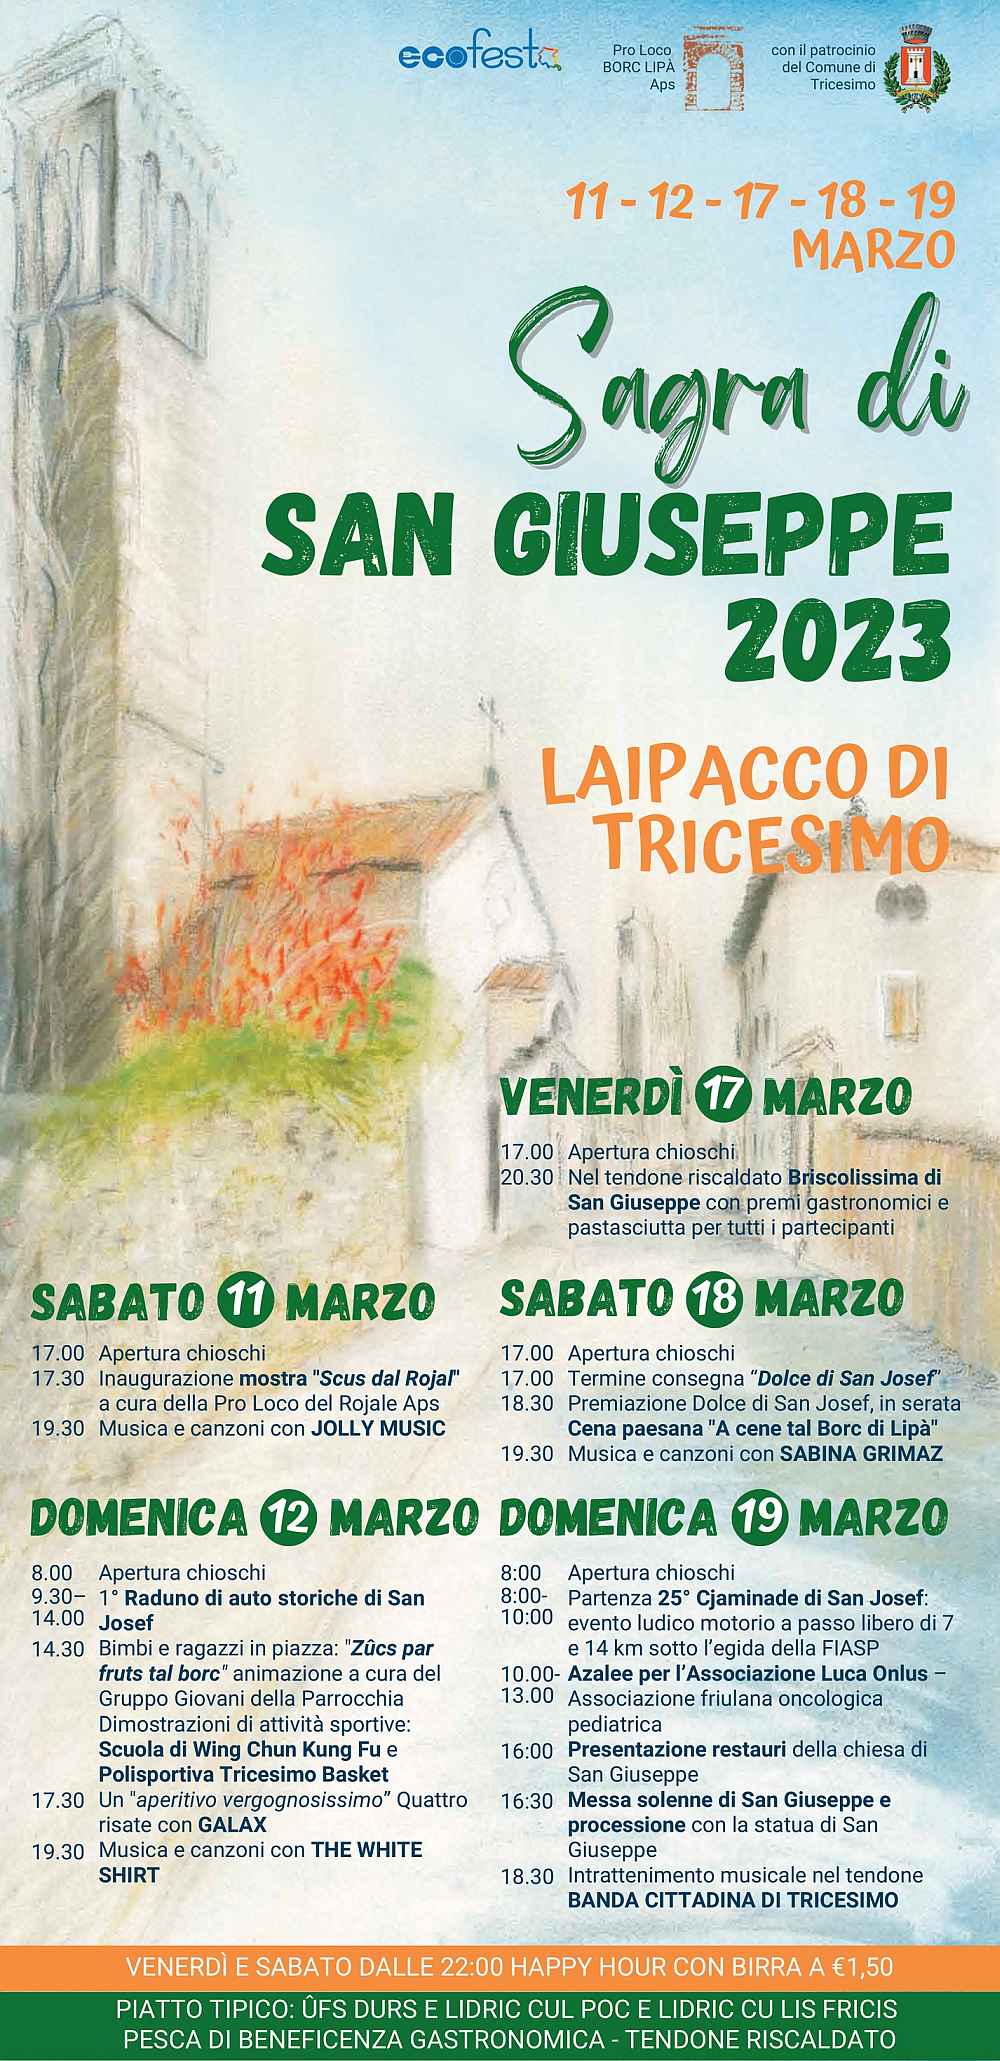 Tricesimo (UD)
"Sagra di San Giuseppe"
11-12-17-18-19 Marzo 2023